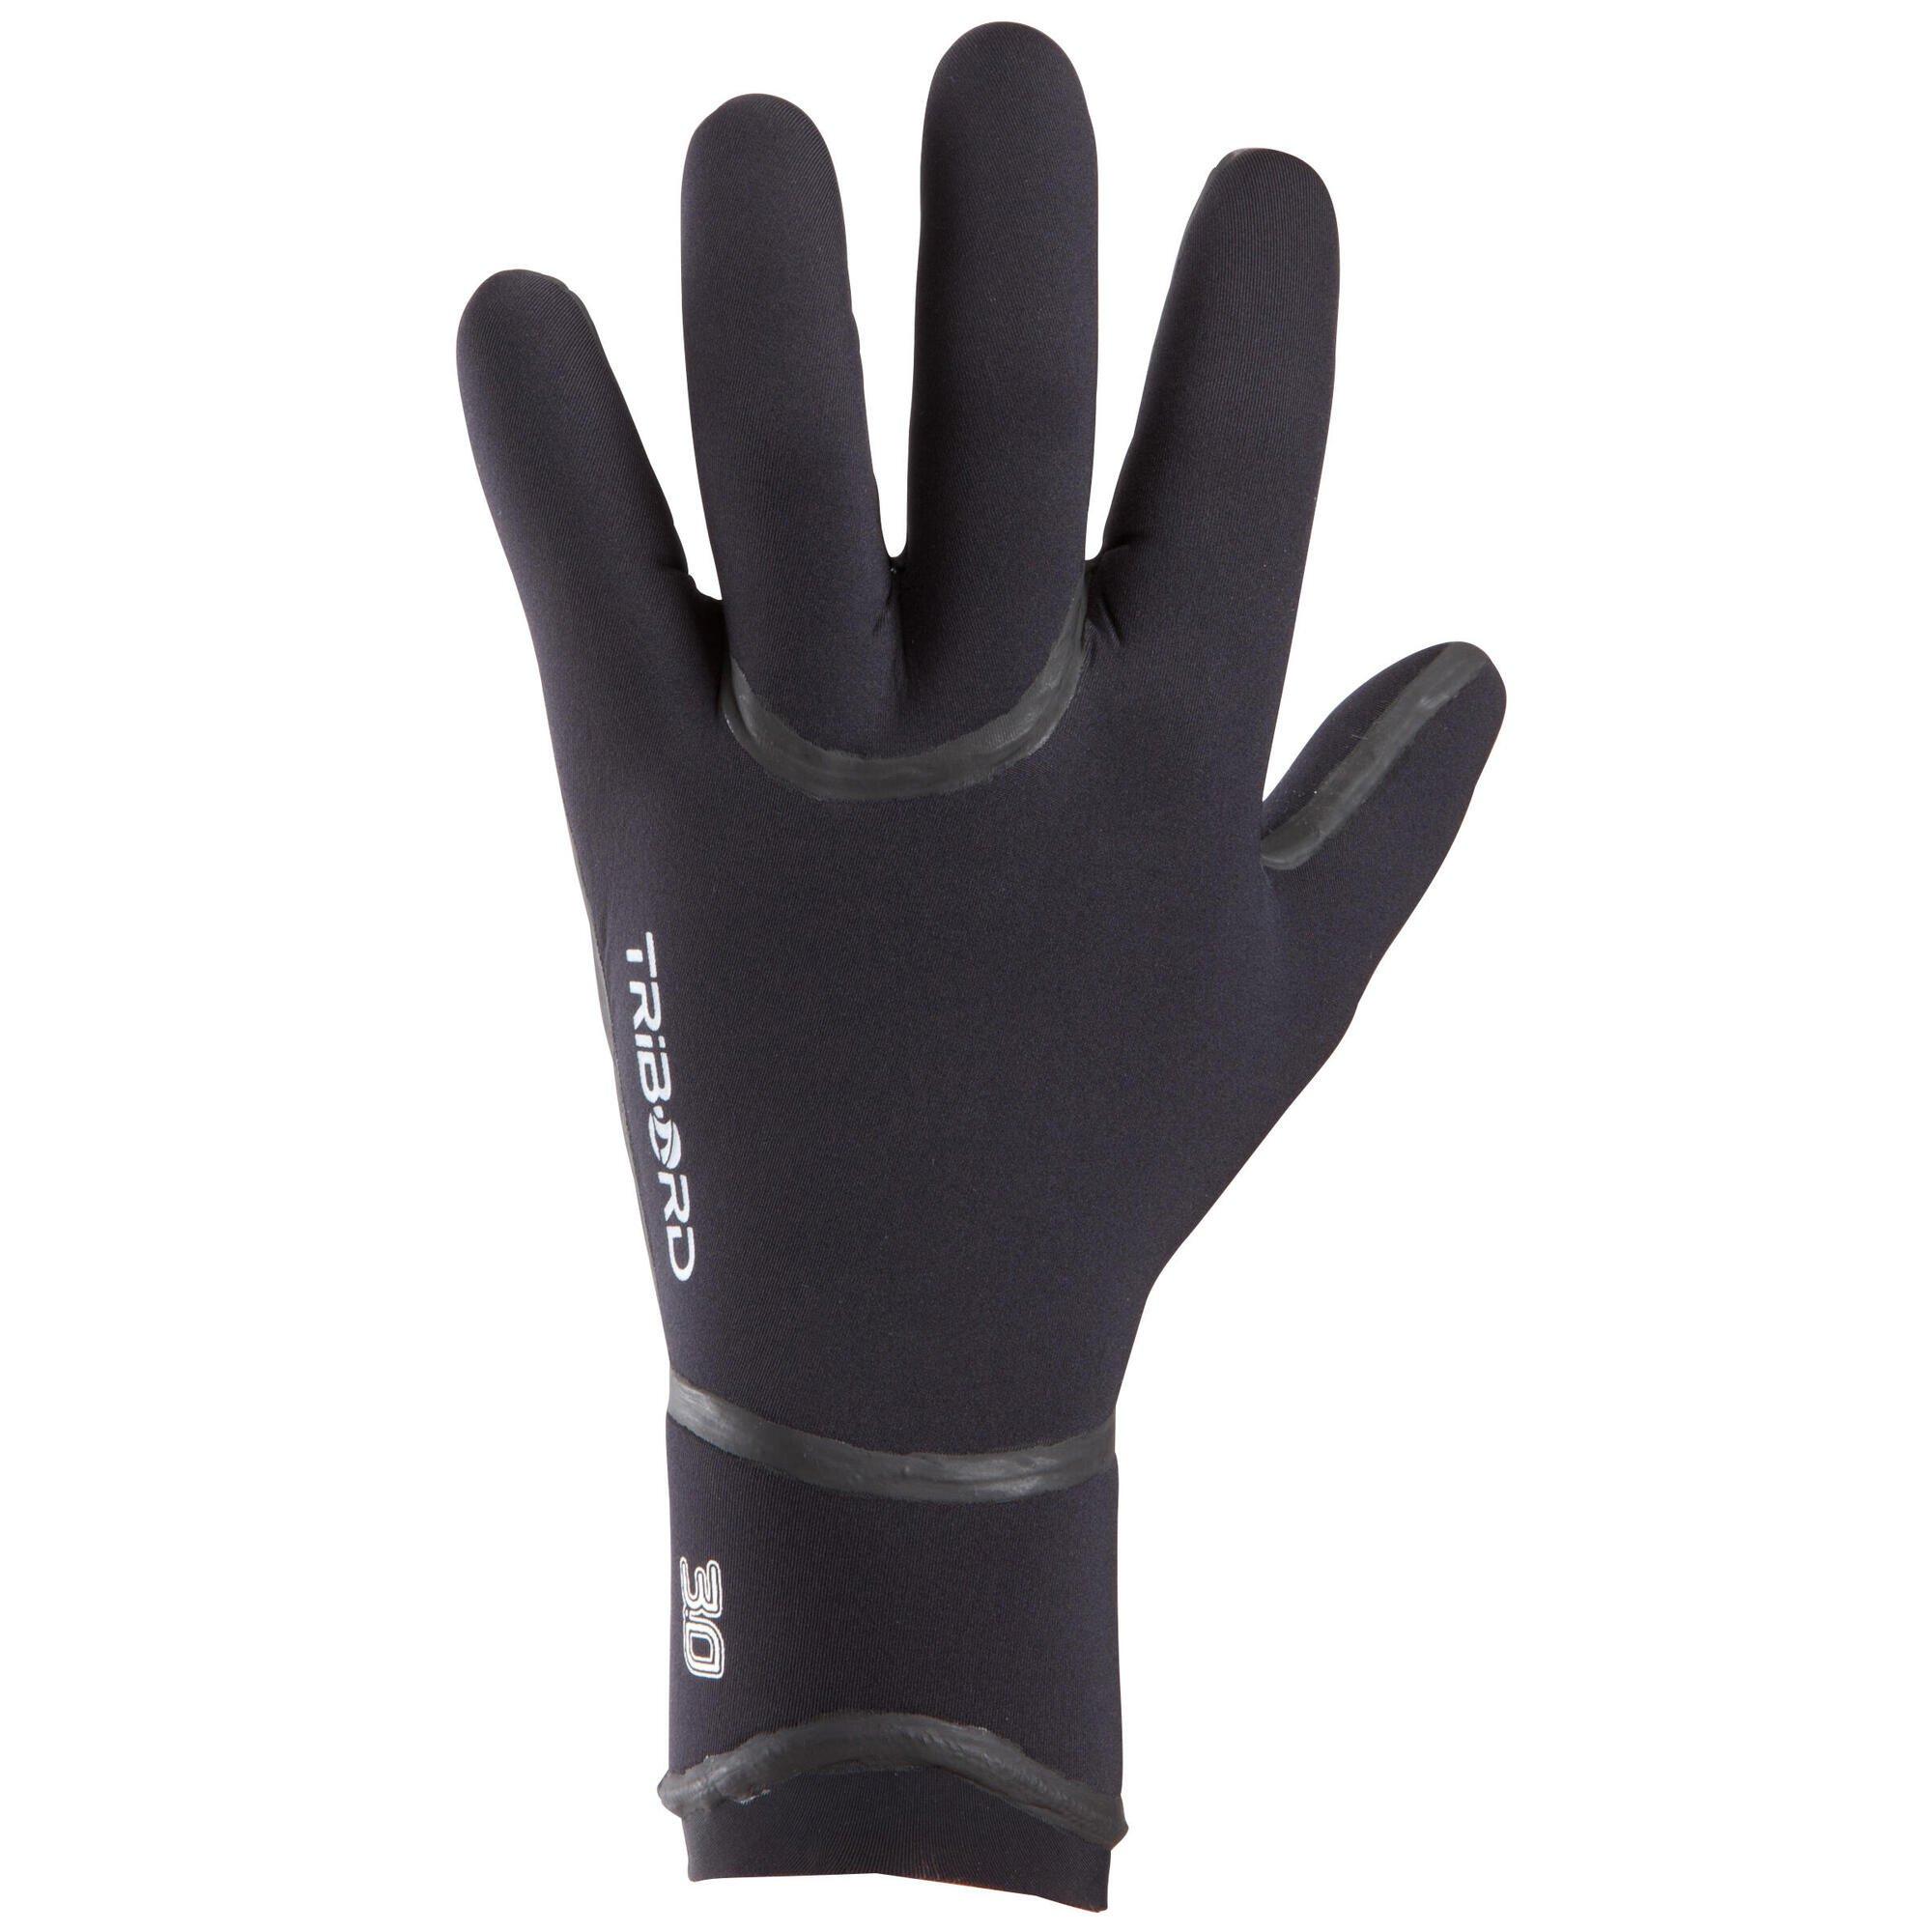 Decathlon 3 мм неопреновые перчатки для серфинга в холодной воде Olaian, черный перчатки атлетические stingrey неопрен